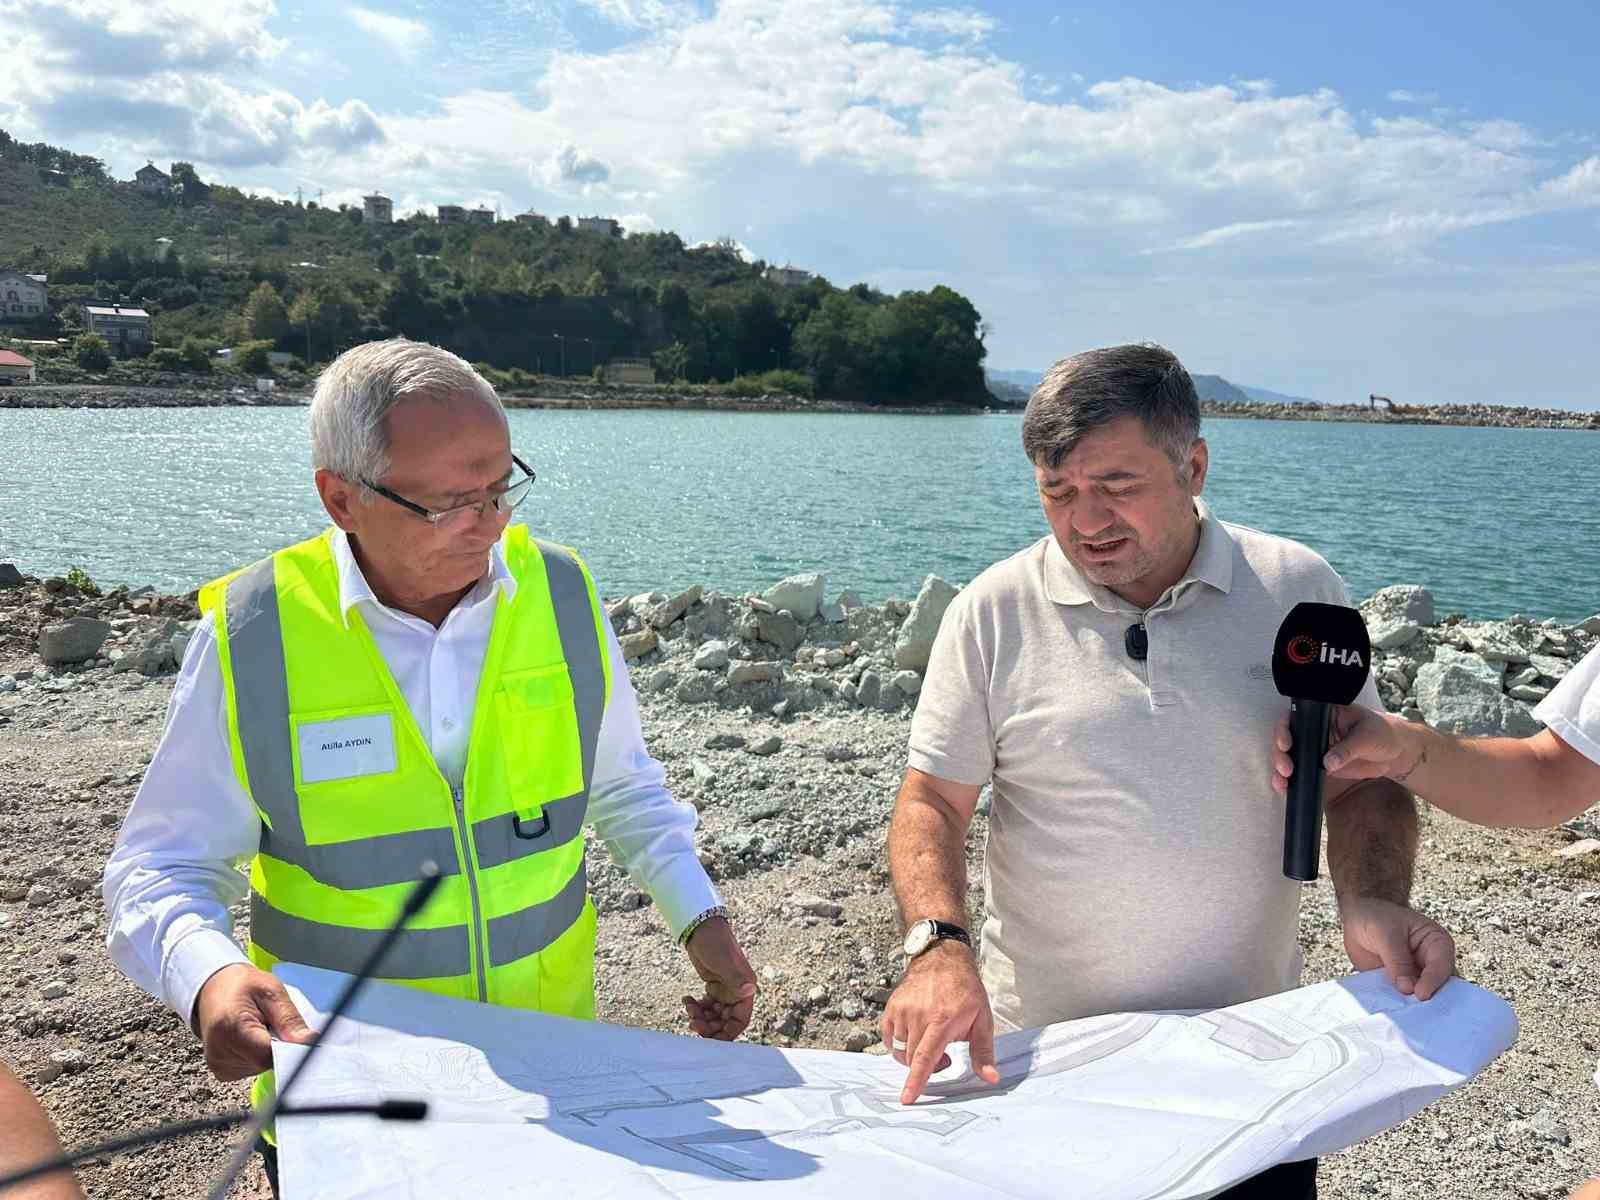 Türkiye’nin en büyük balıkçı barınağı 2025 yılında hizmete girecek